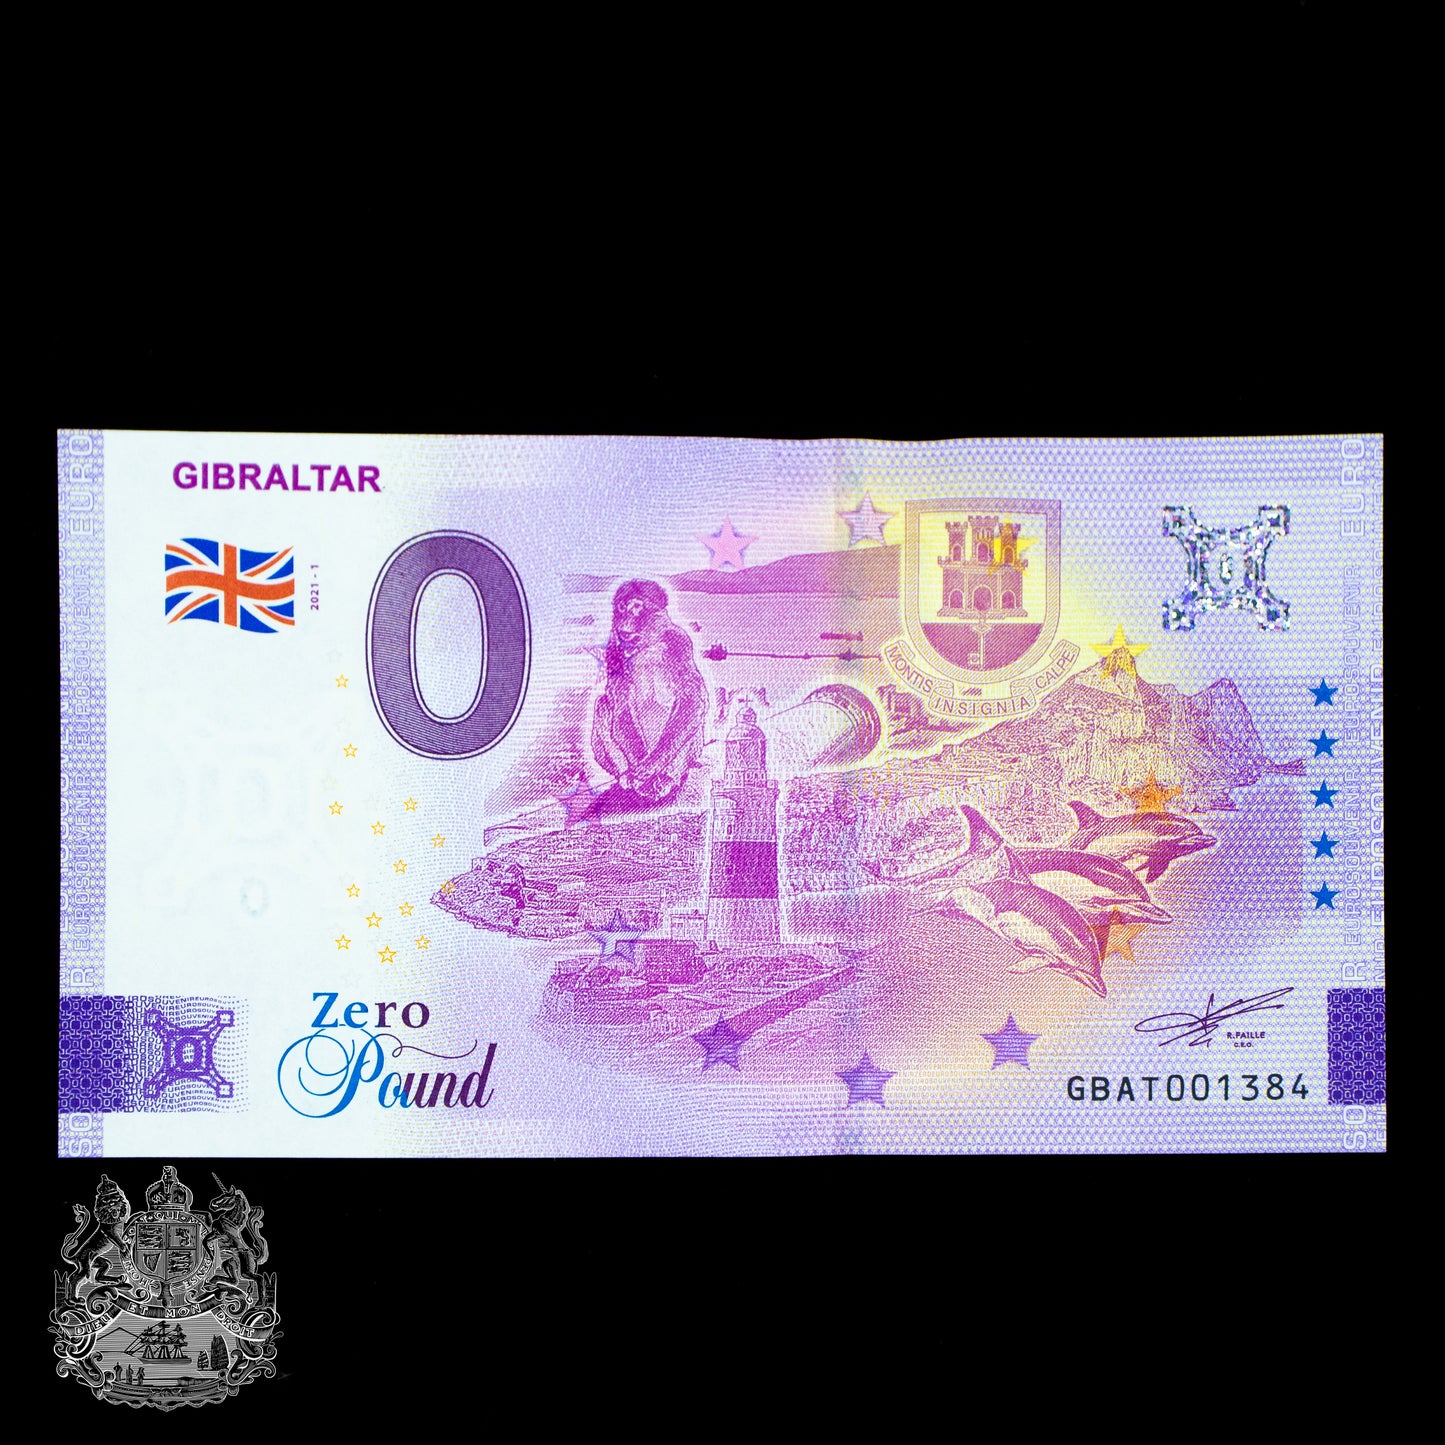 £0 Gibraltar